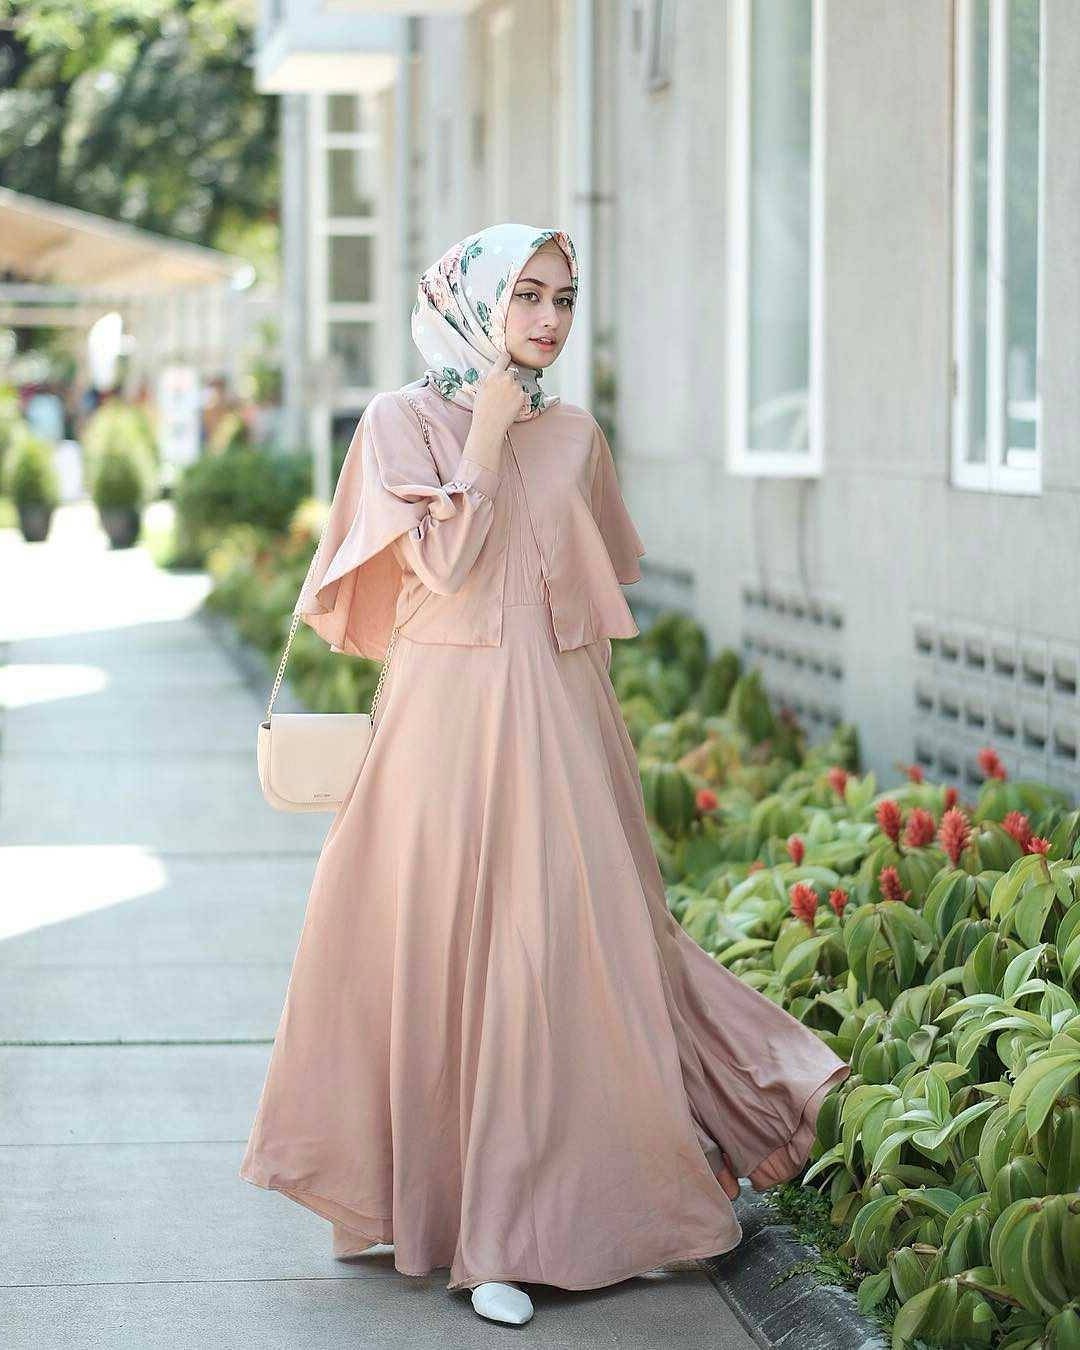 Bentuk Model Baju Lebaran Muslim Terbaru 9ddf 21 Model Gamis Lebaran 2018 Desain Elegan Casual Dan Modern